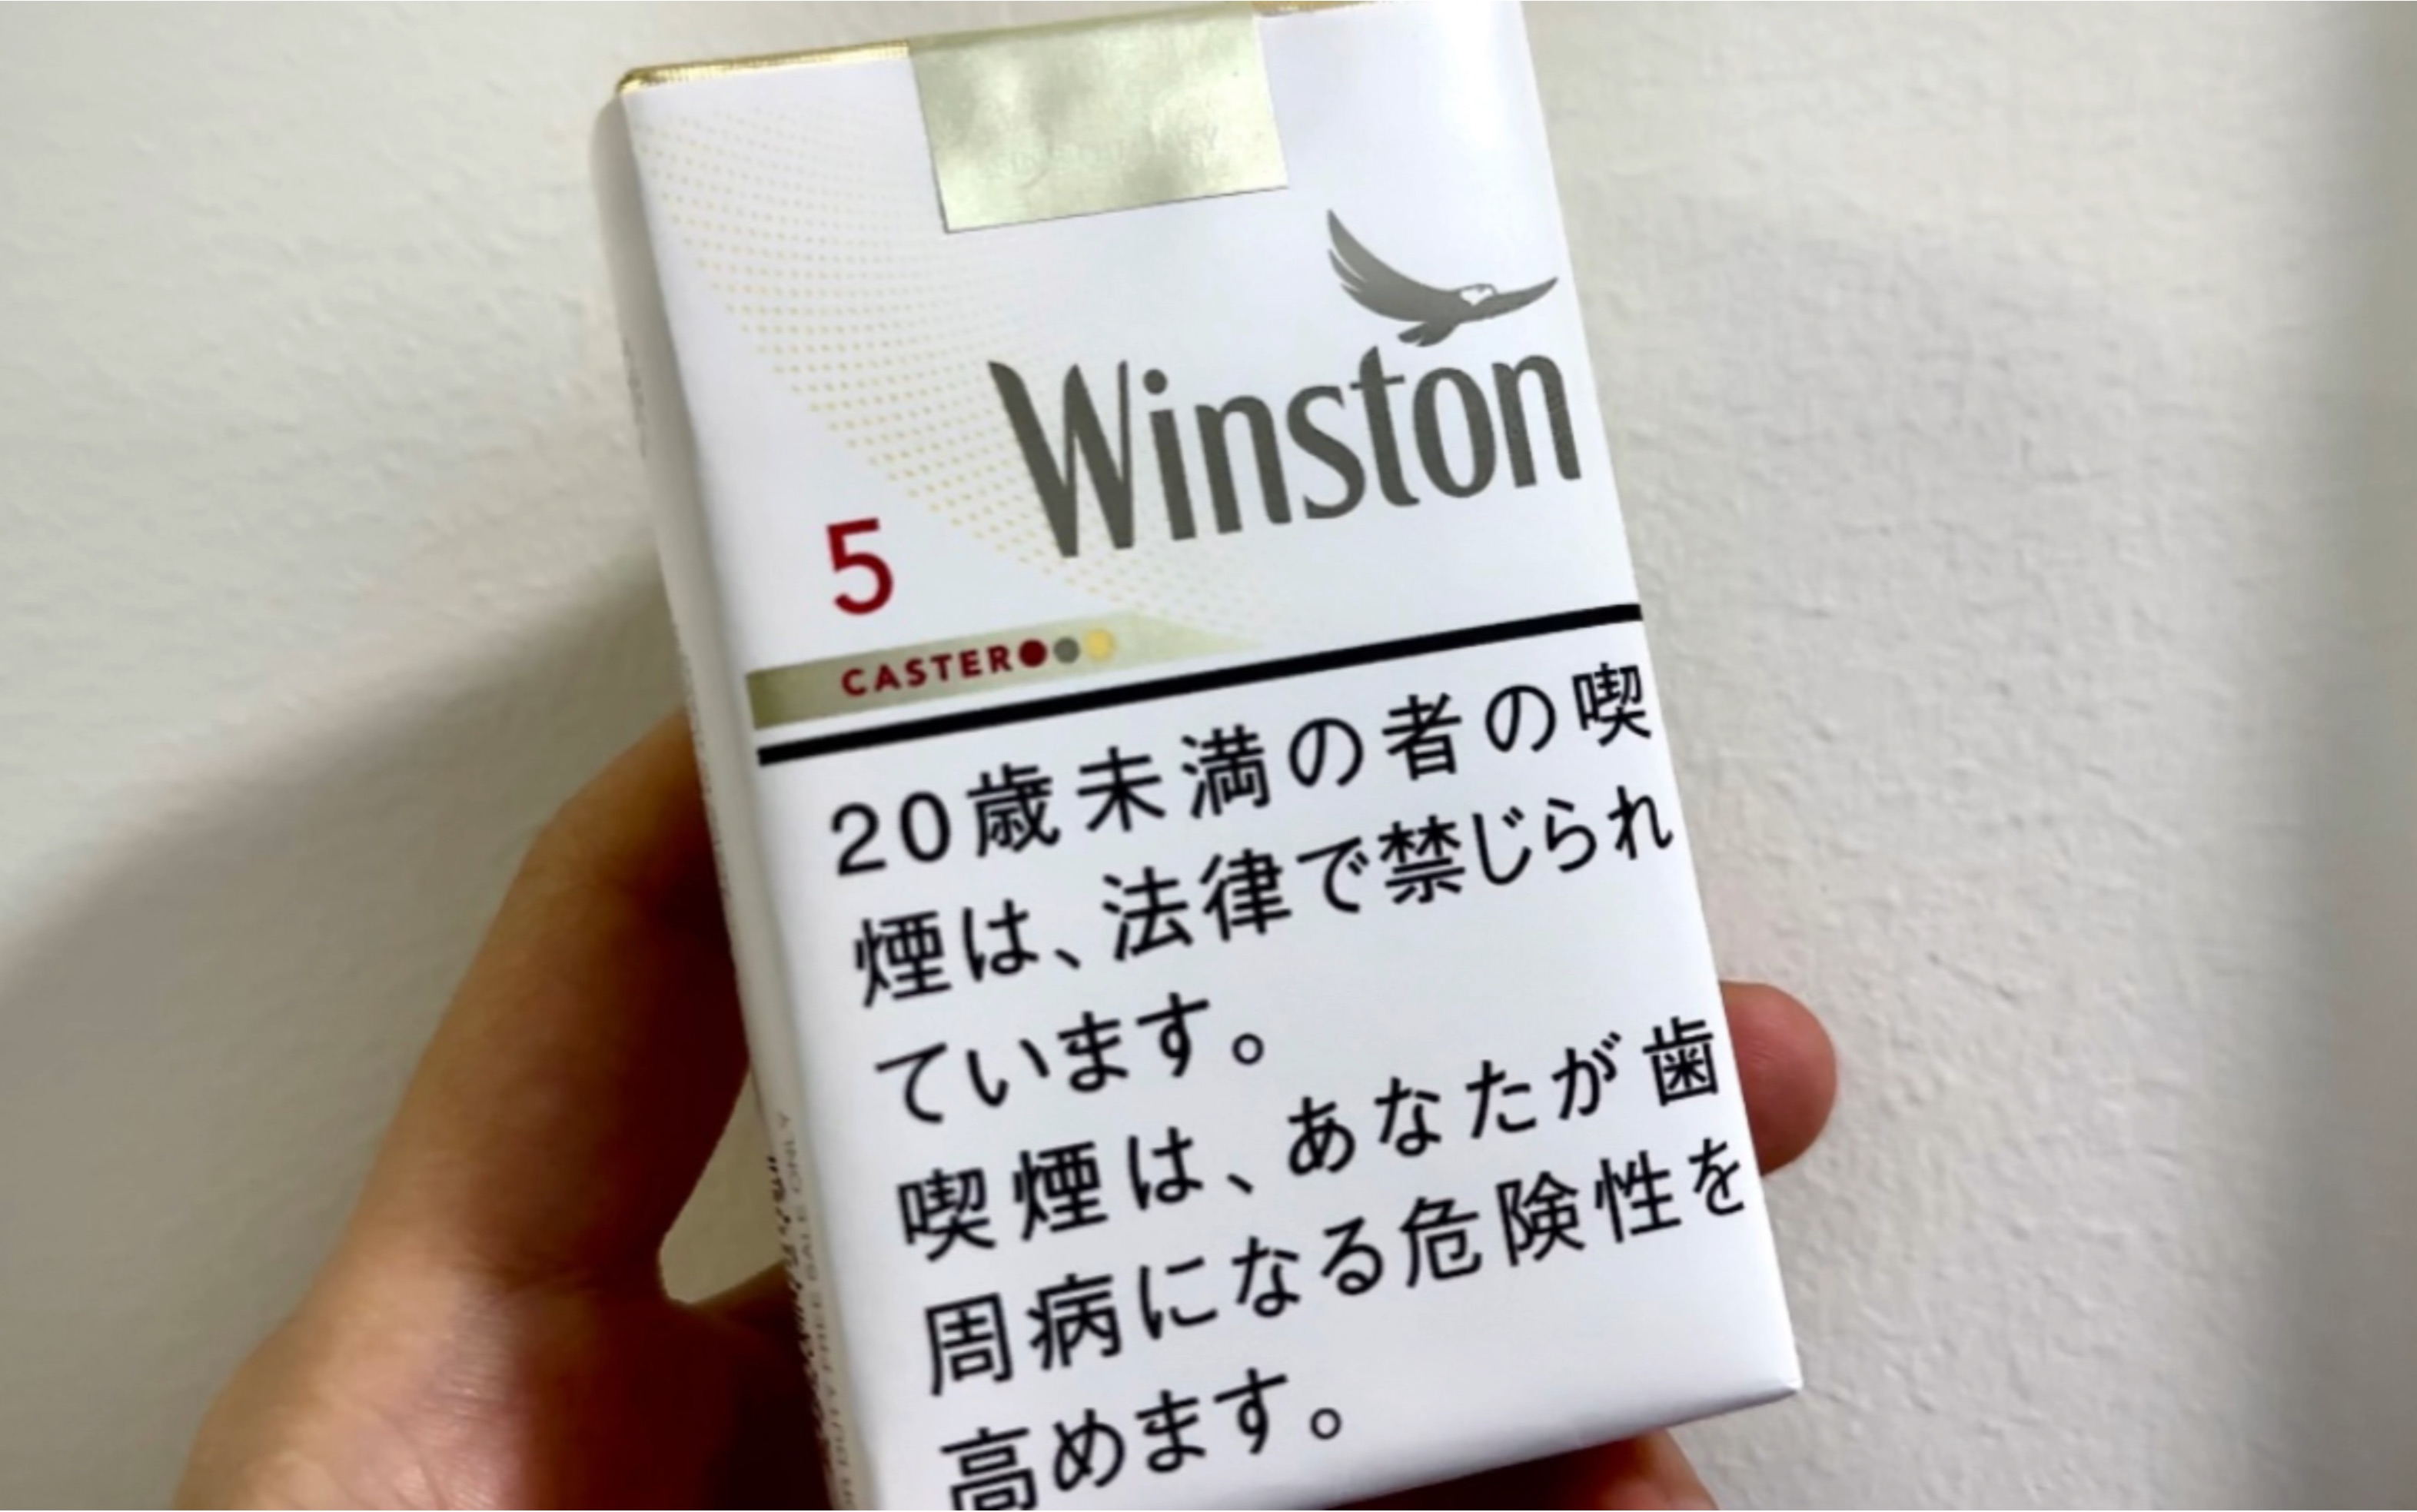 日本winston烟代购图片